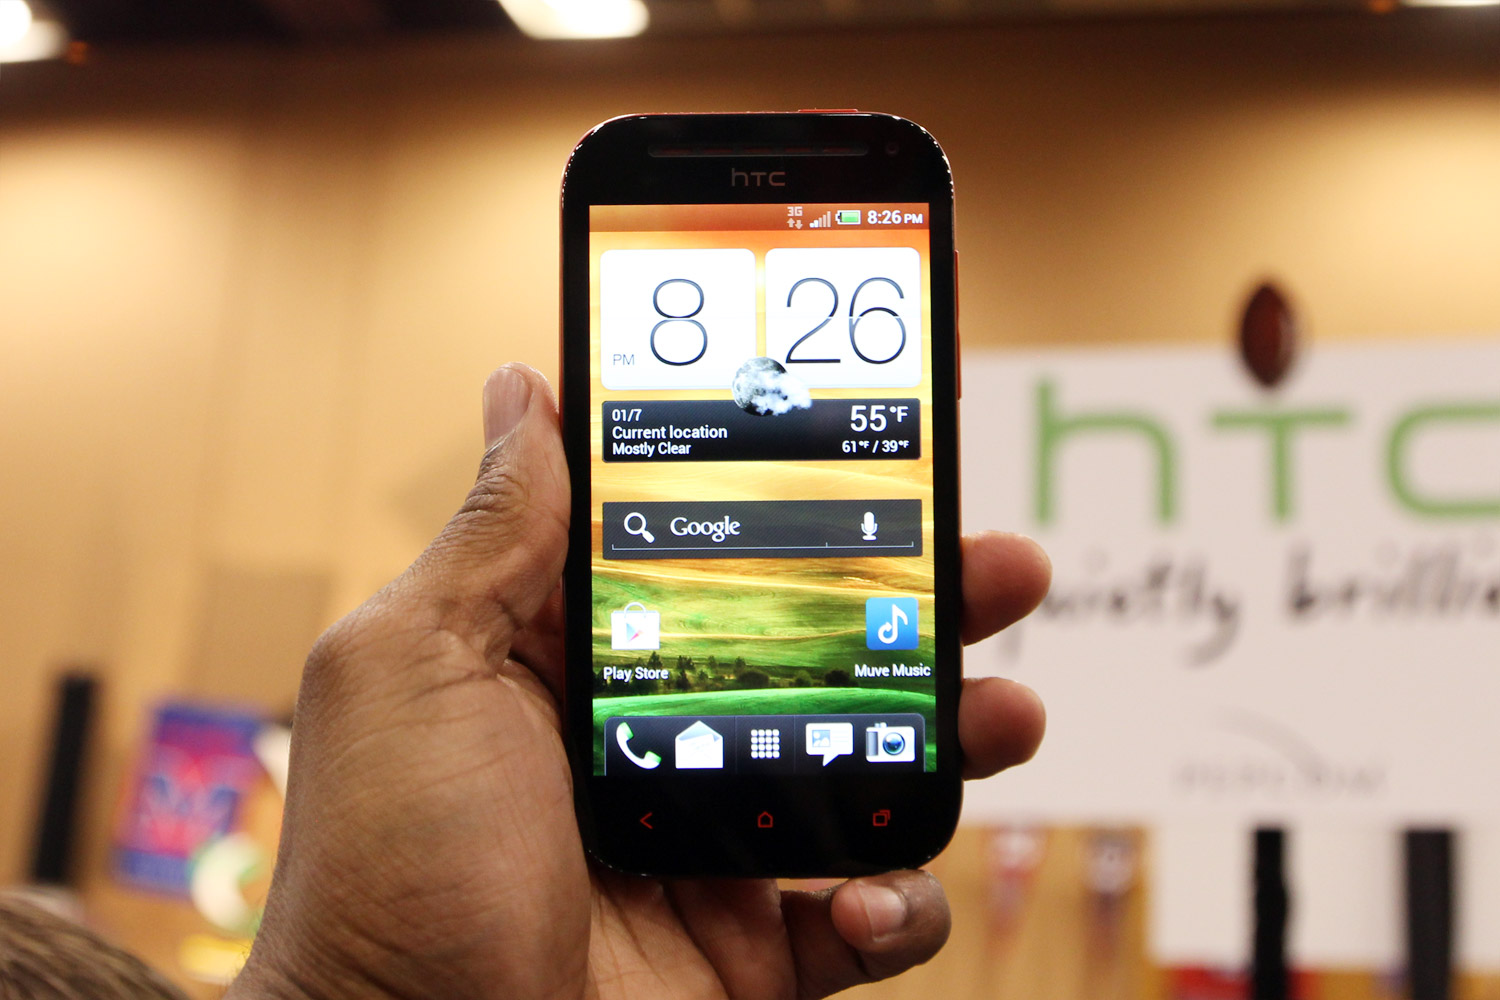 Zahvaljujući svojim dimenzijama, HTC One SV lepo leži u ruci!